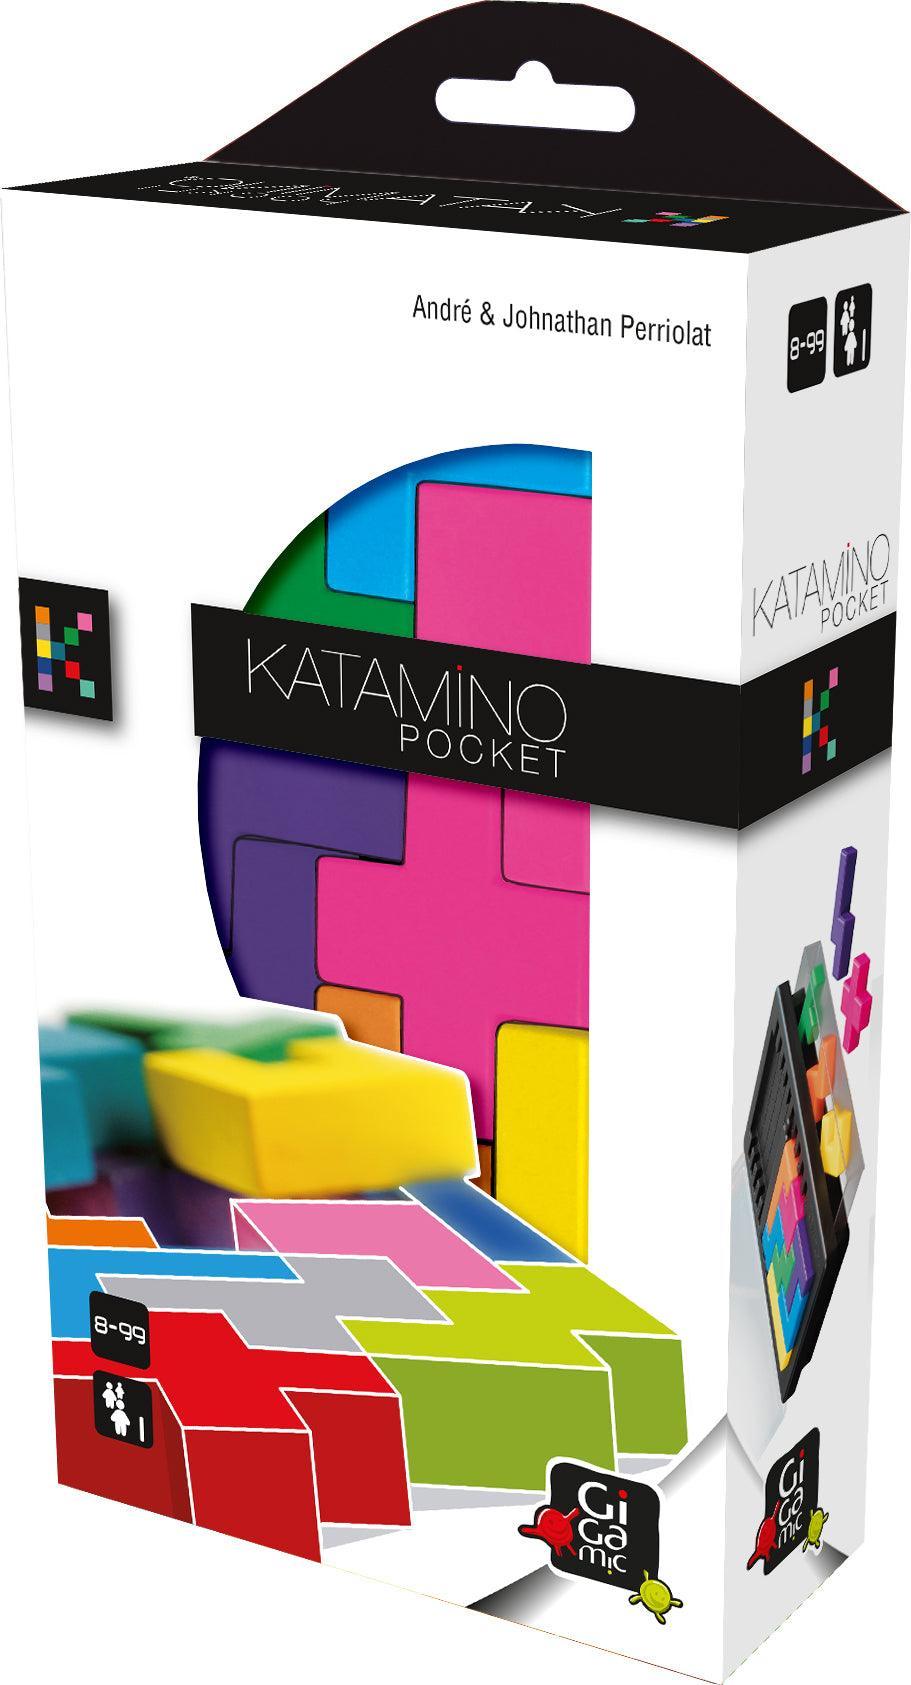 Katamino Pocket - Gaming Library